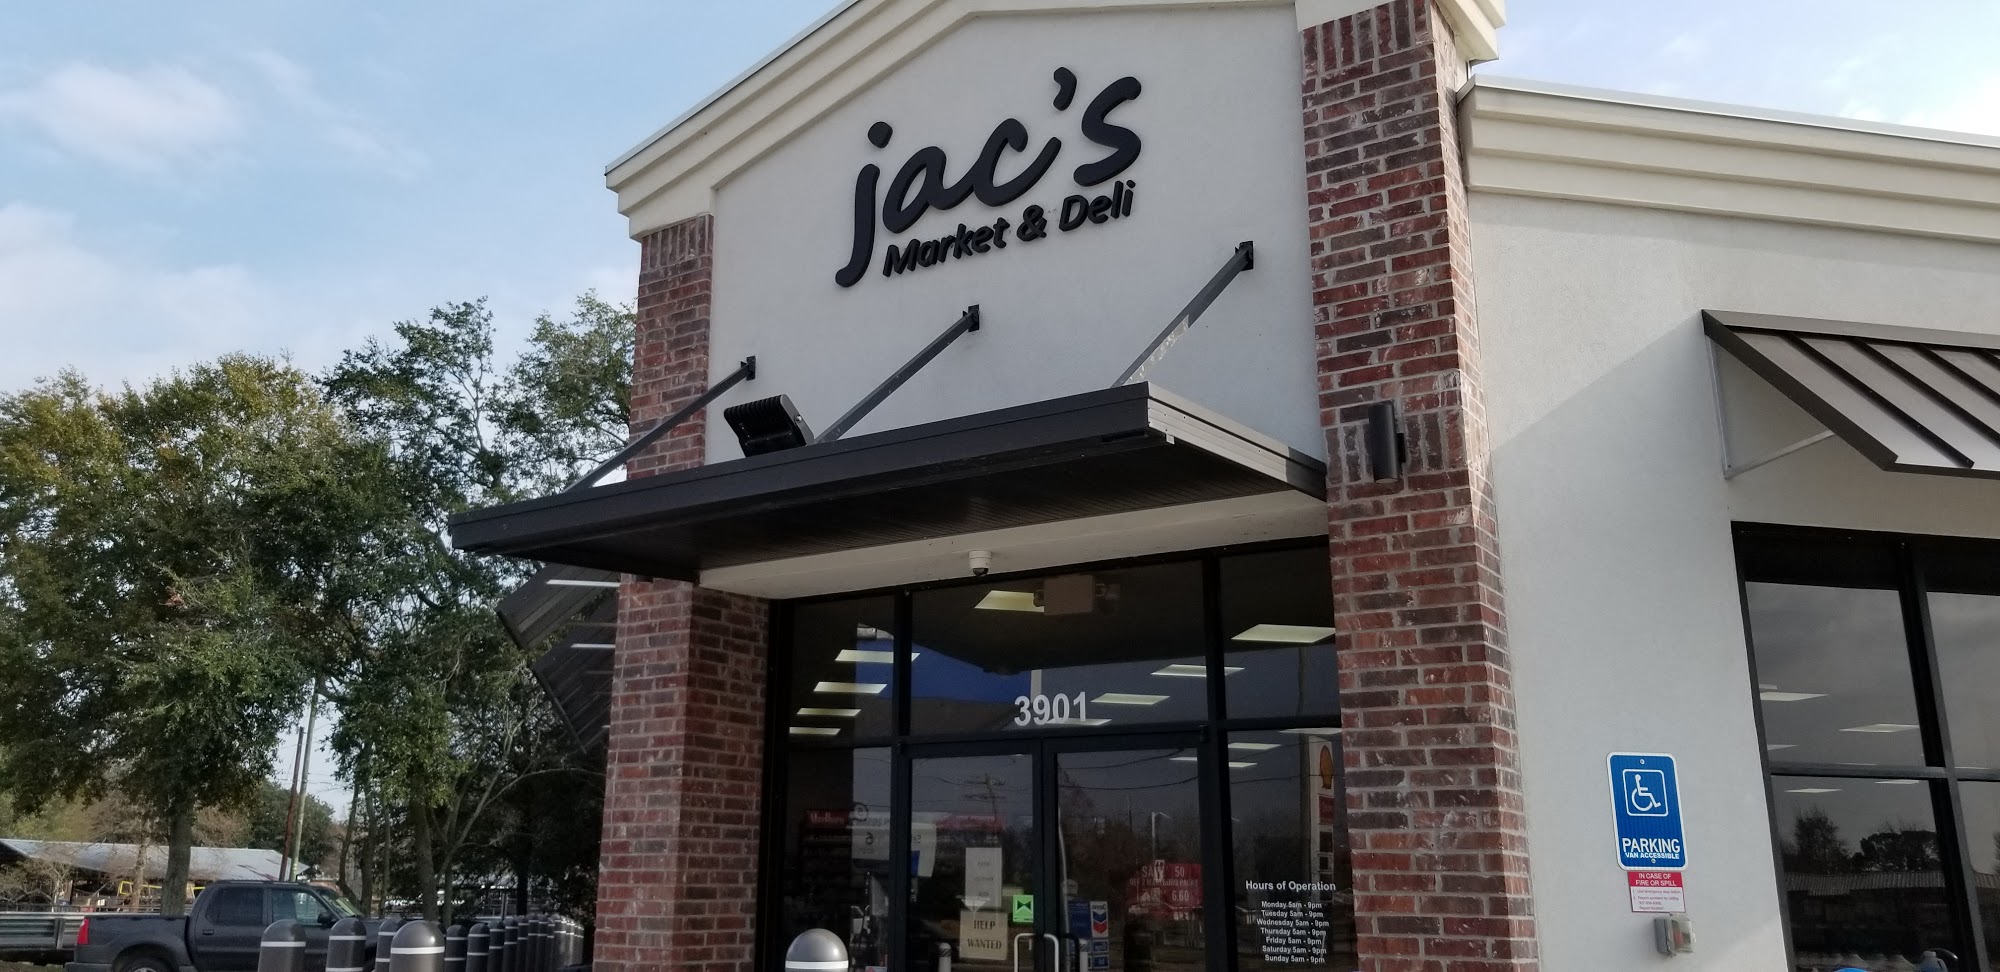 Jac’s Market & Deli